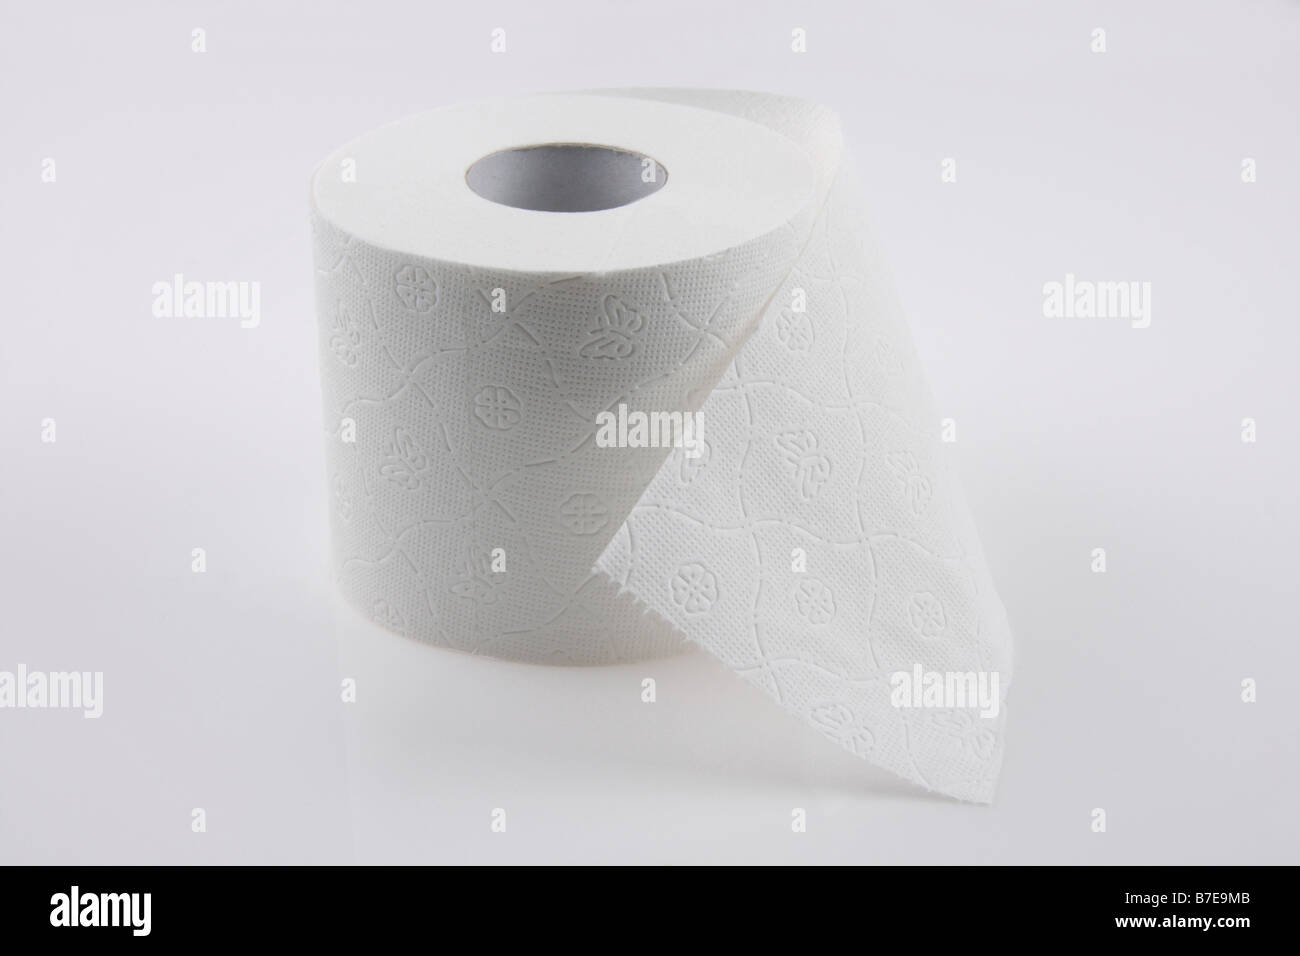 Image de clip rouleau de papier de toilette usage éditorial seulement Banque D'Images